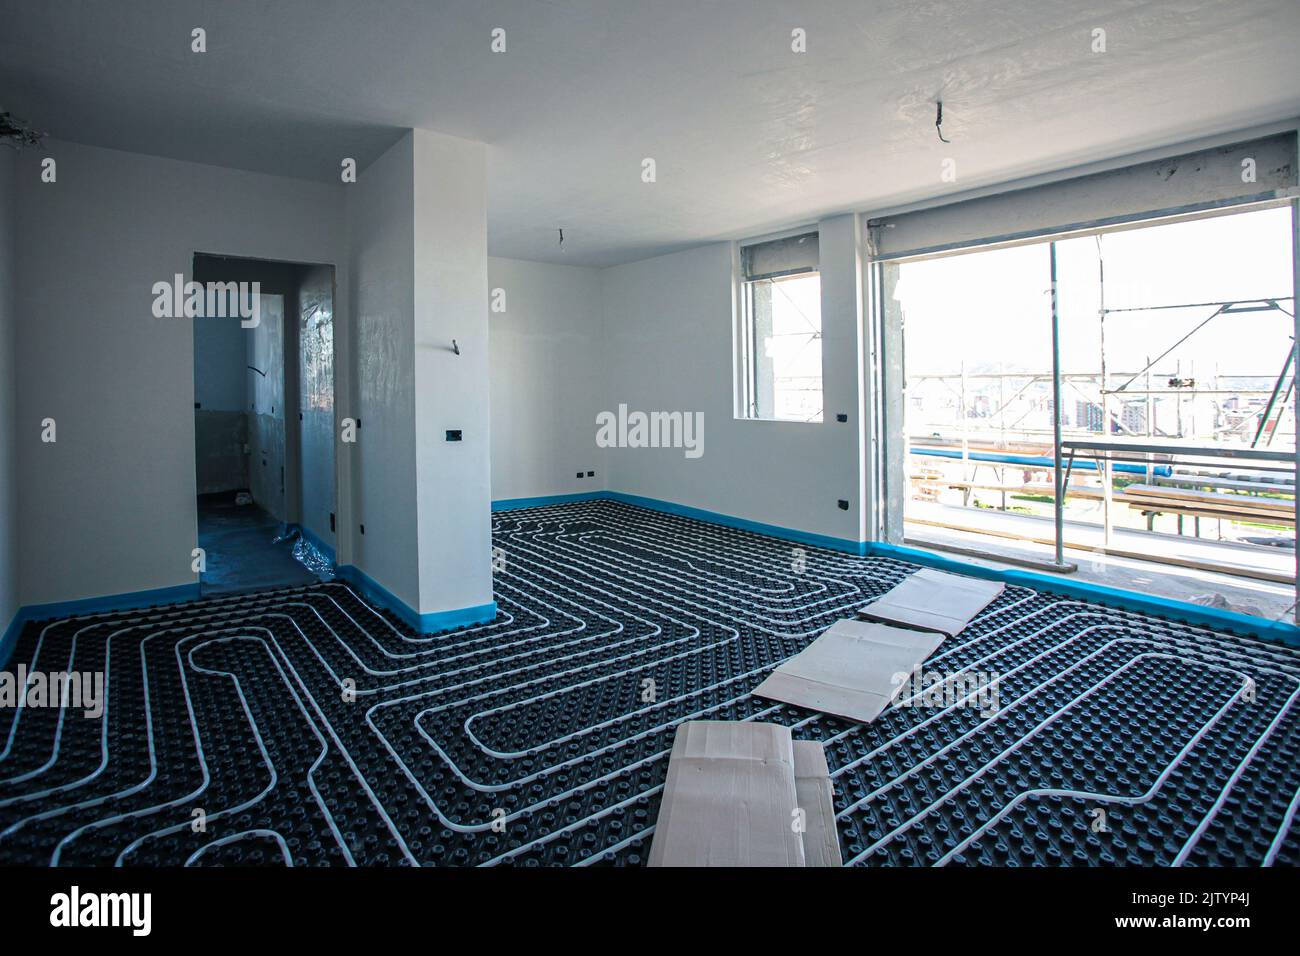 Riscaldamento a pavimento. Impianto di riscaldamento a pavimento in un edificio moderno in costruzione. Foto Stock